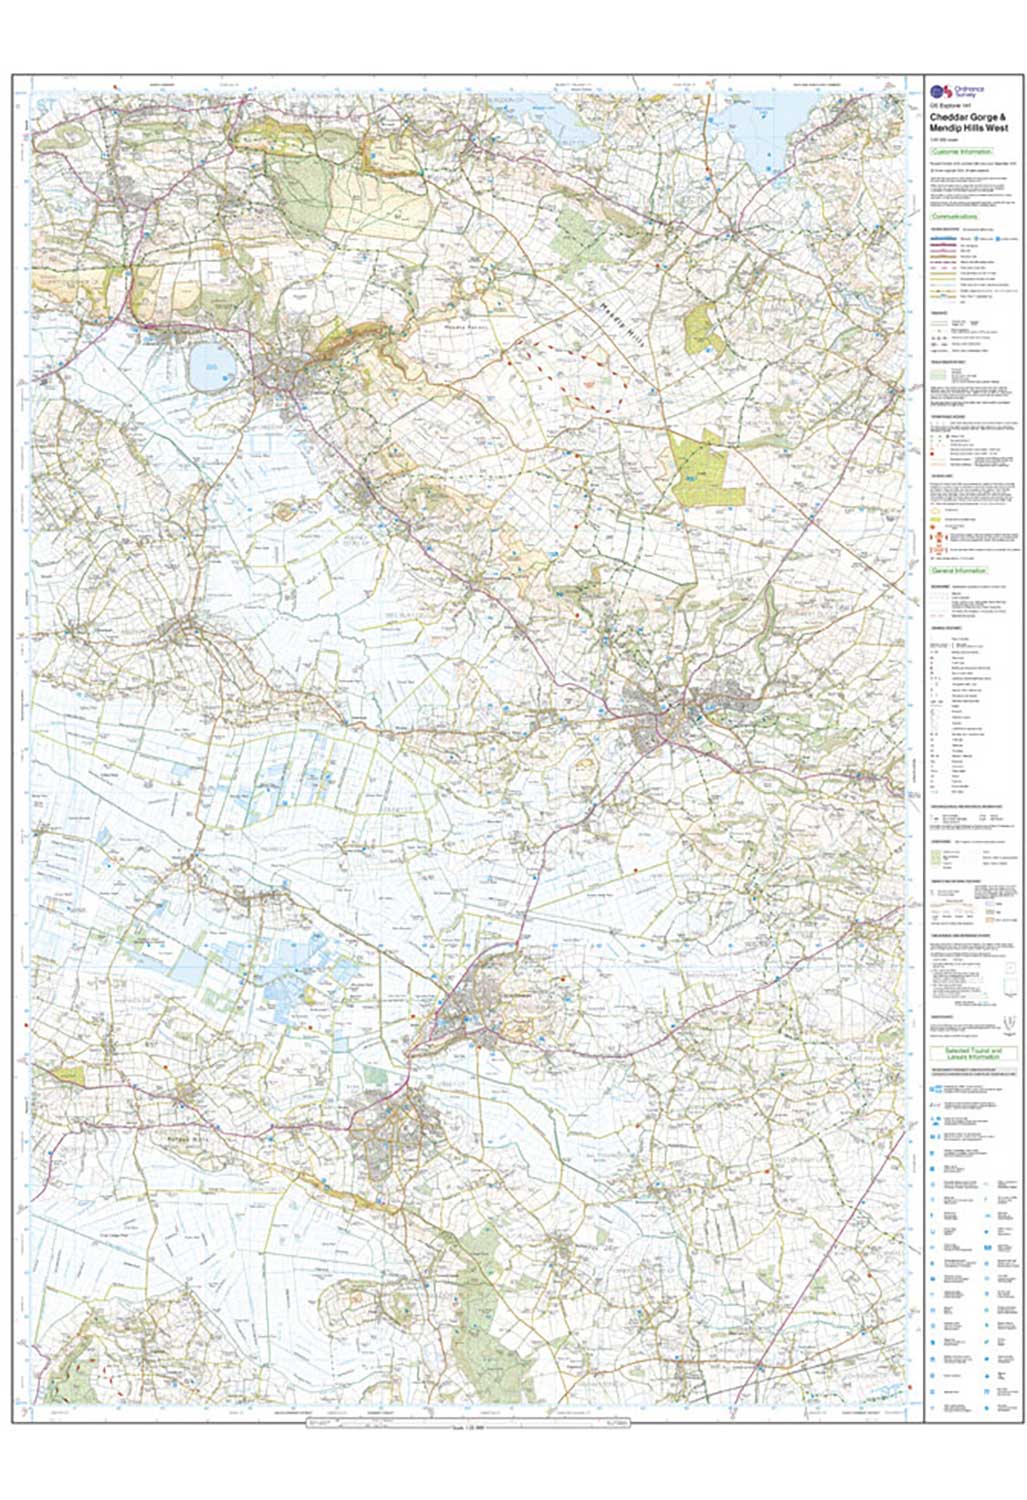 Ordnance Survey Cheddar Gorge & Mendip Hills West - OS Explorer Active 141 Map